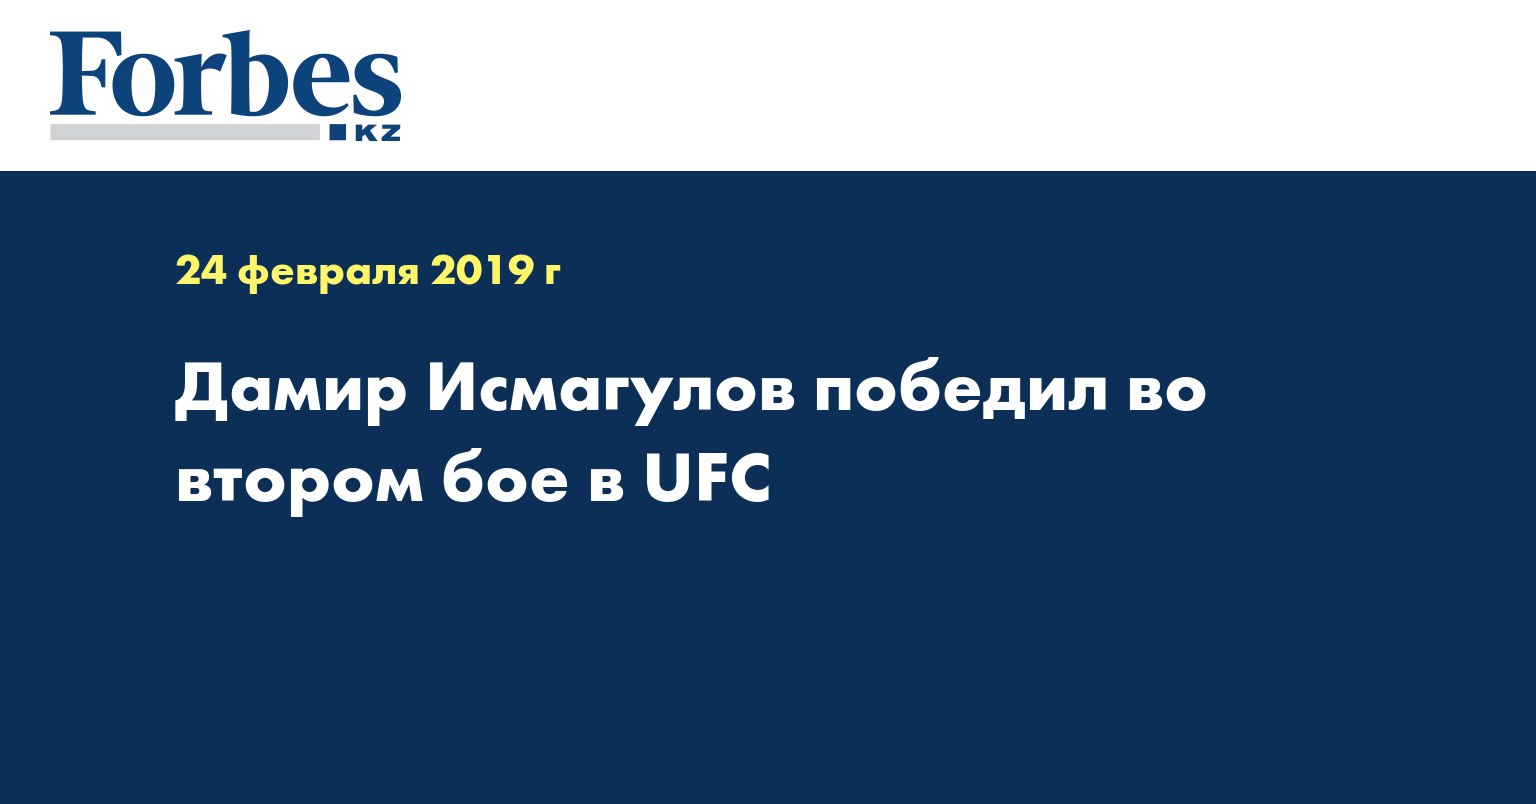 Дамир Исмагулов победил во втором бое в UFC  